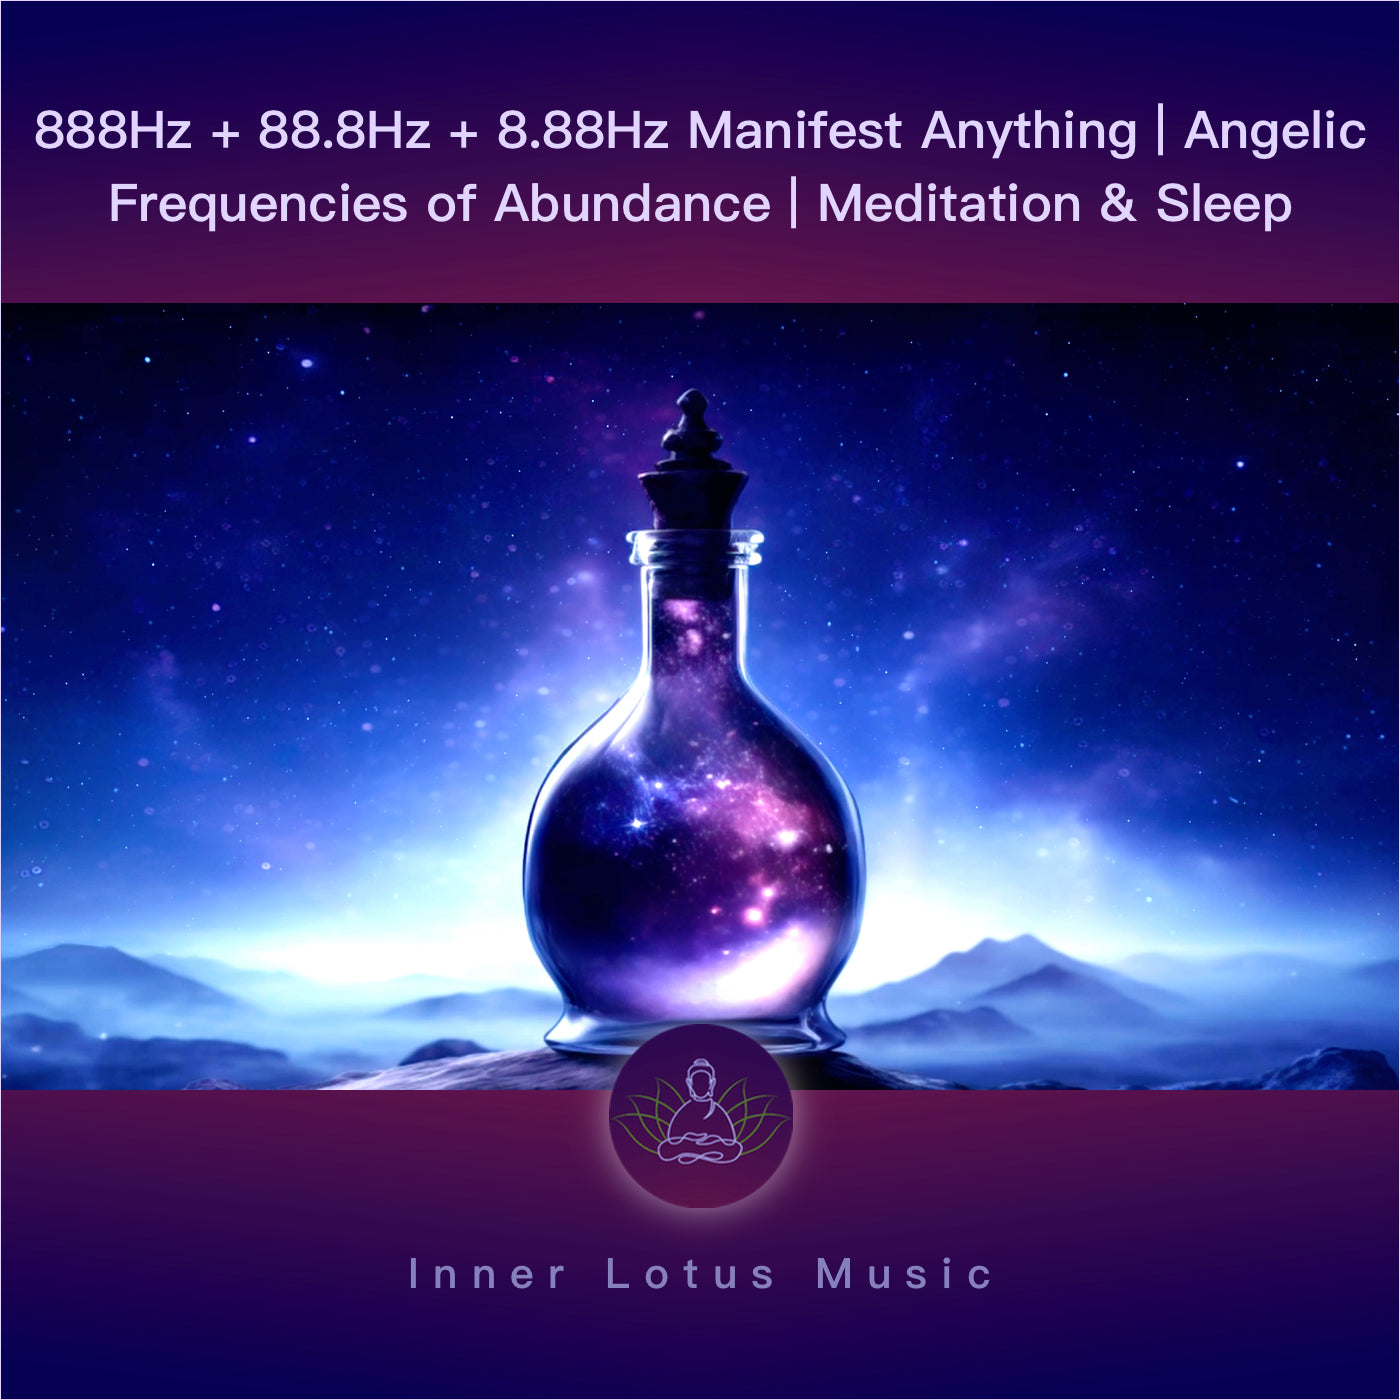 888Hz + 88,8Hz + 8,88Hz Manifeste Tout | Fréquences Angéliques de Prospérité | Musique Méditation